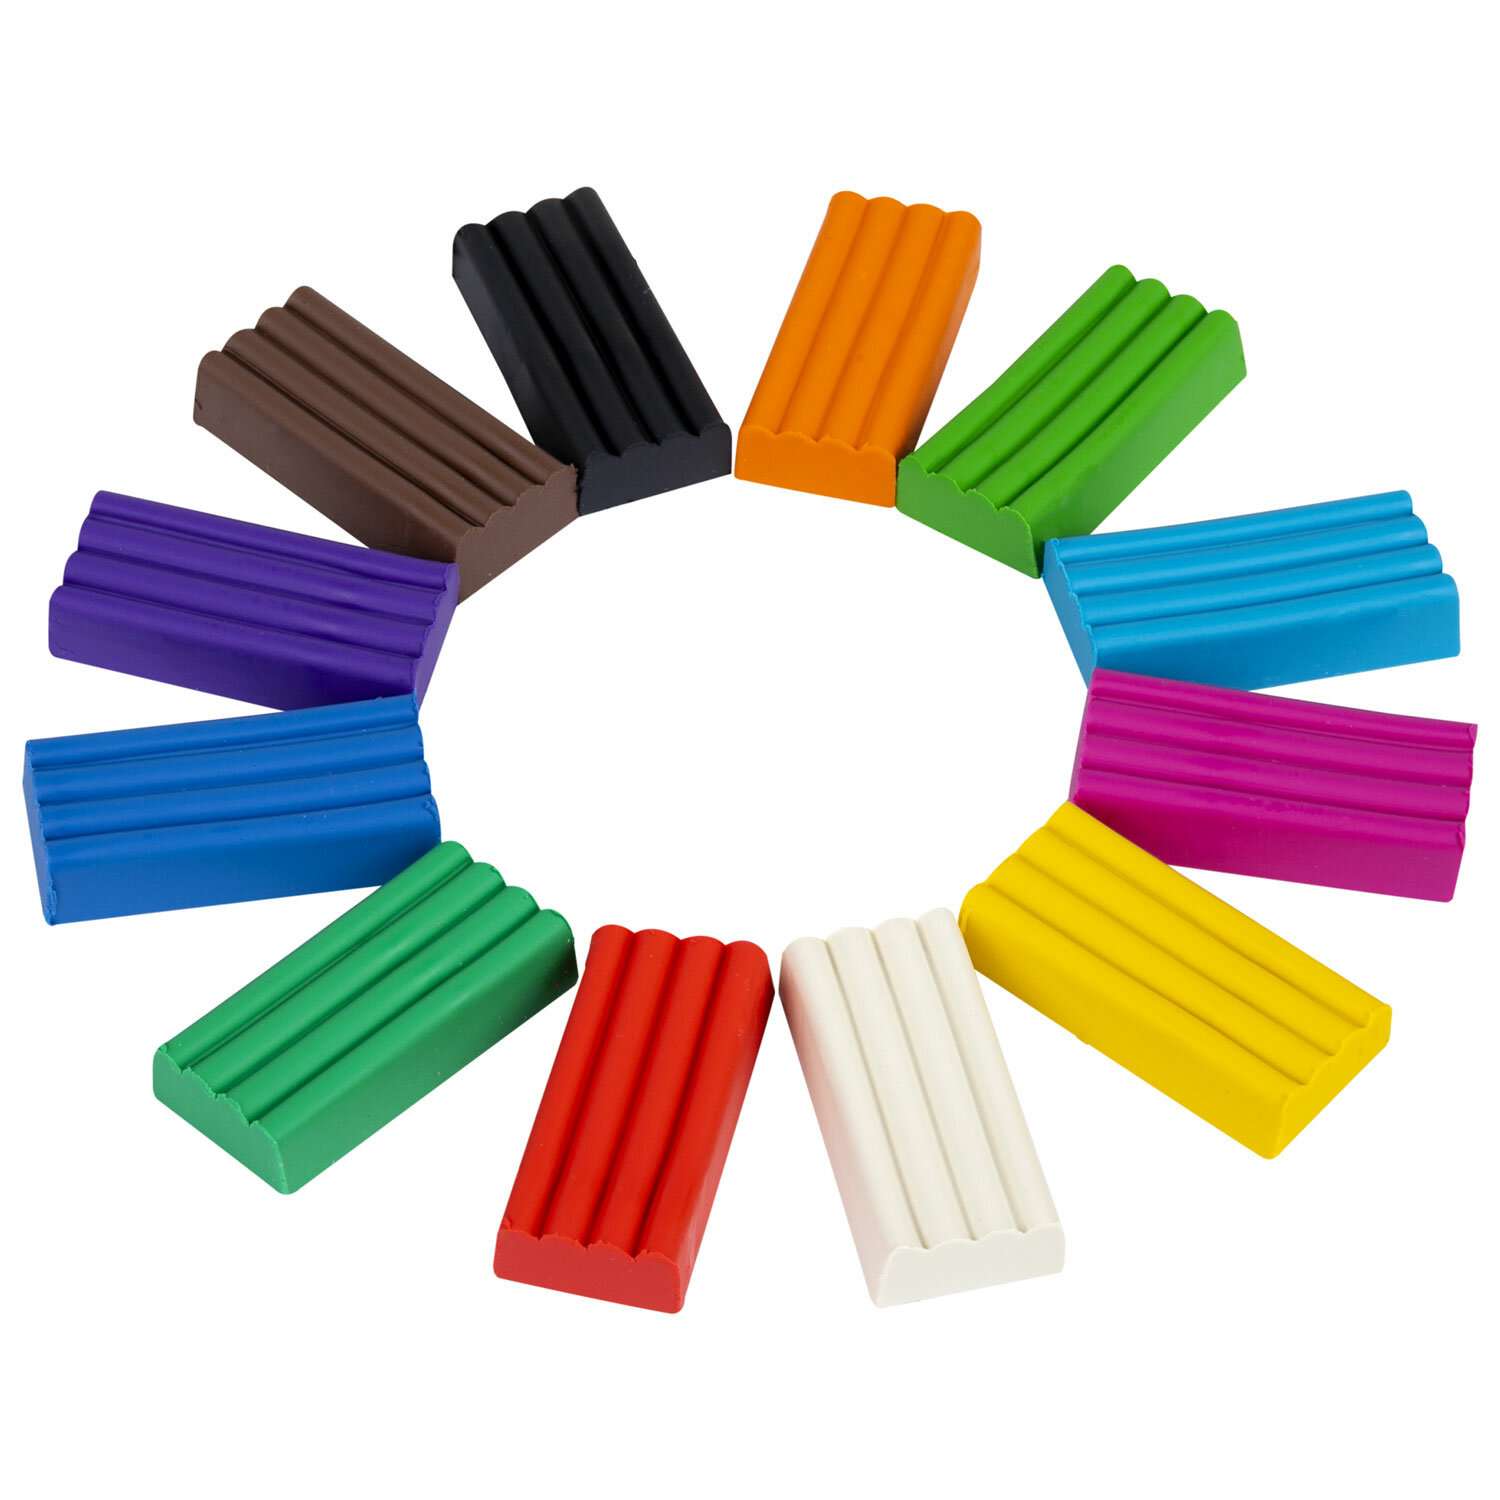 Пластилин классический Пифагор для лепки набор для детей 12 цветов - фото 6